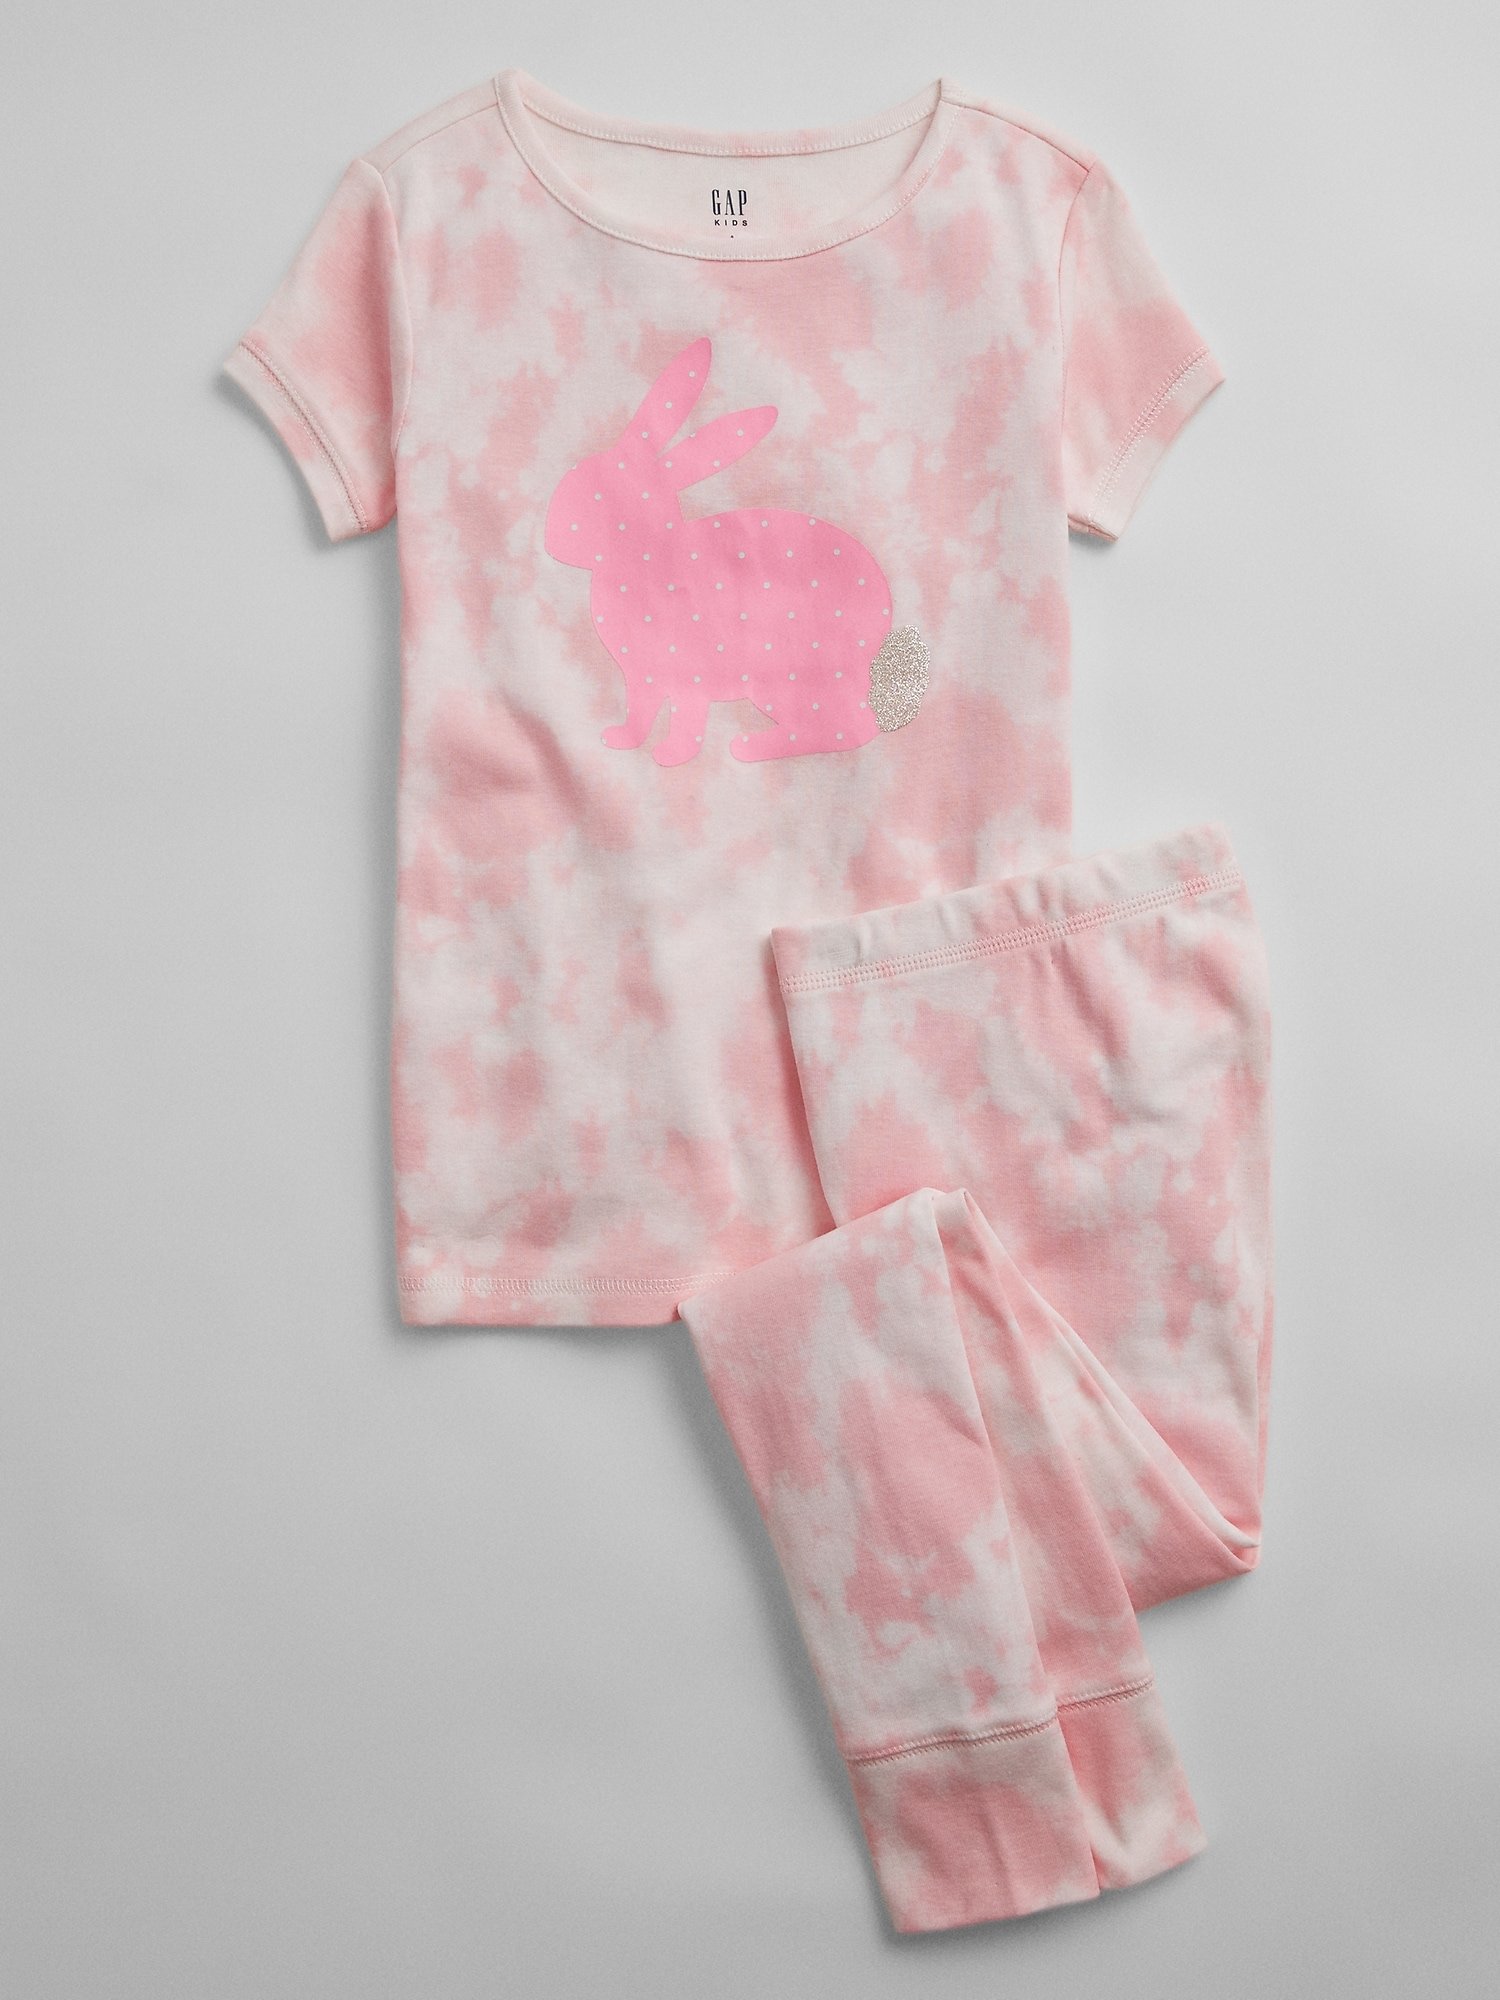 Fotografie Růžové holčičí dětské pyžamo v-g bunny ss lj org